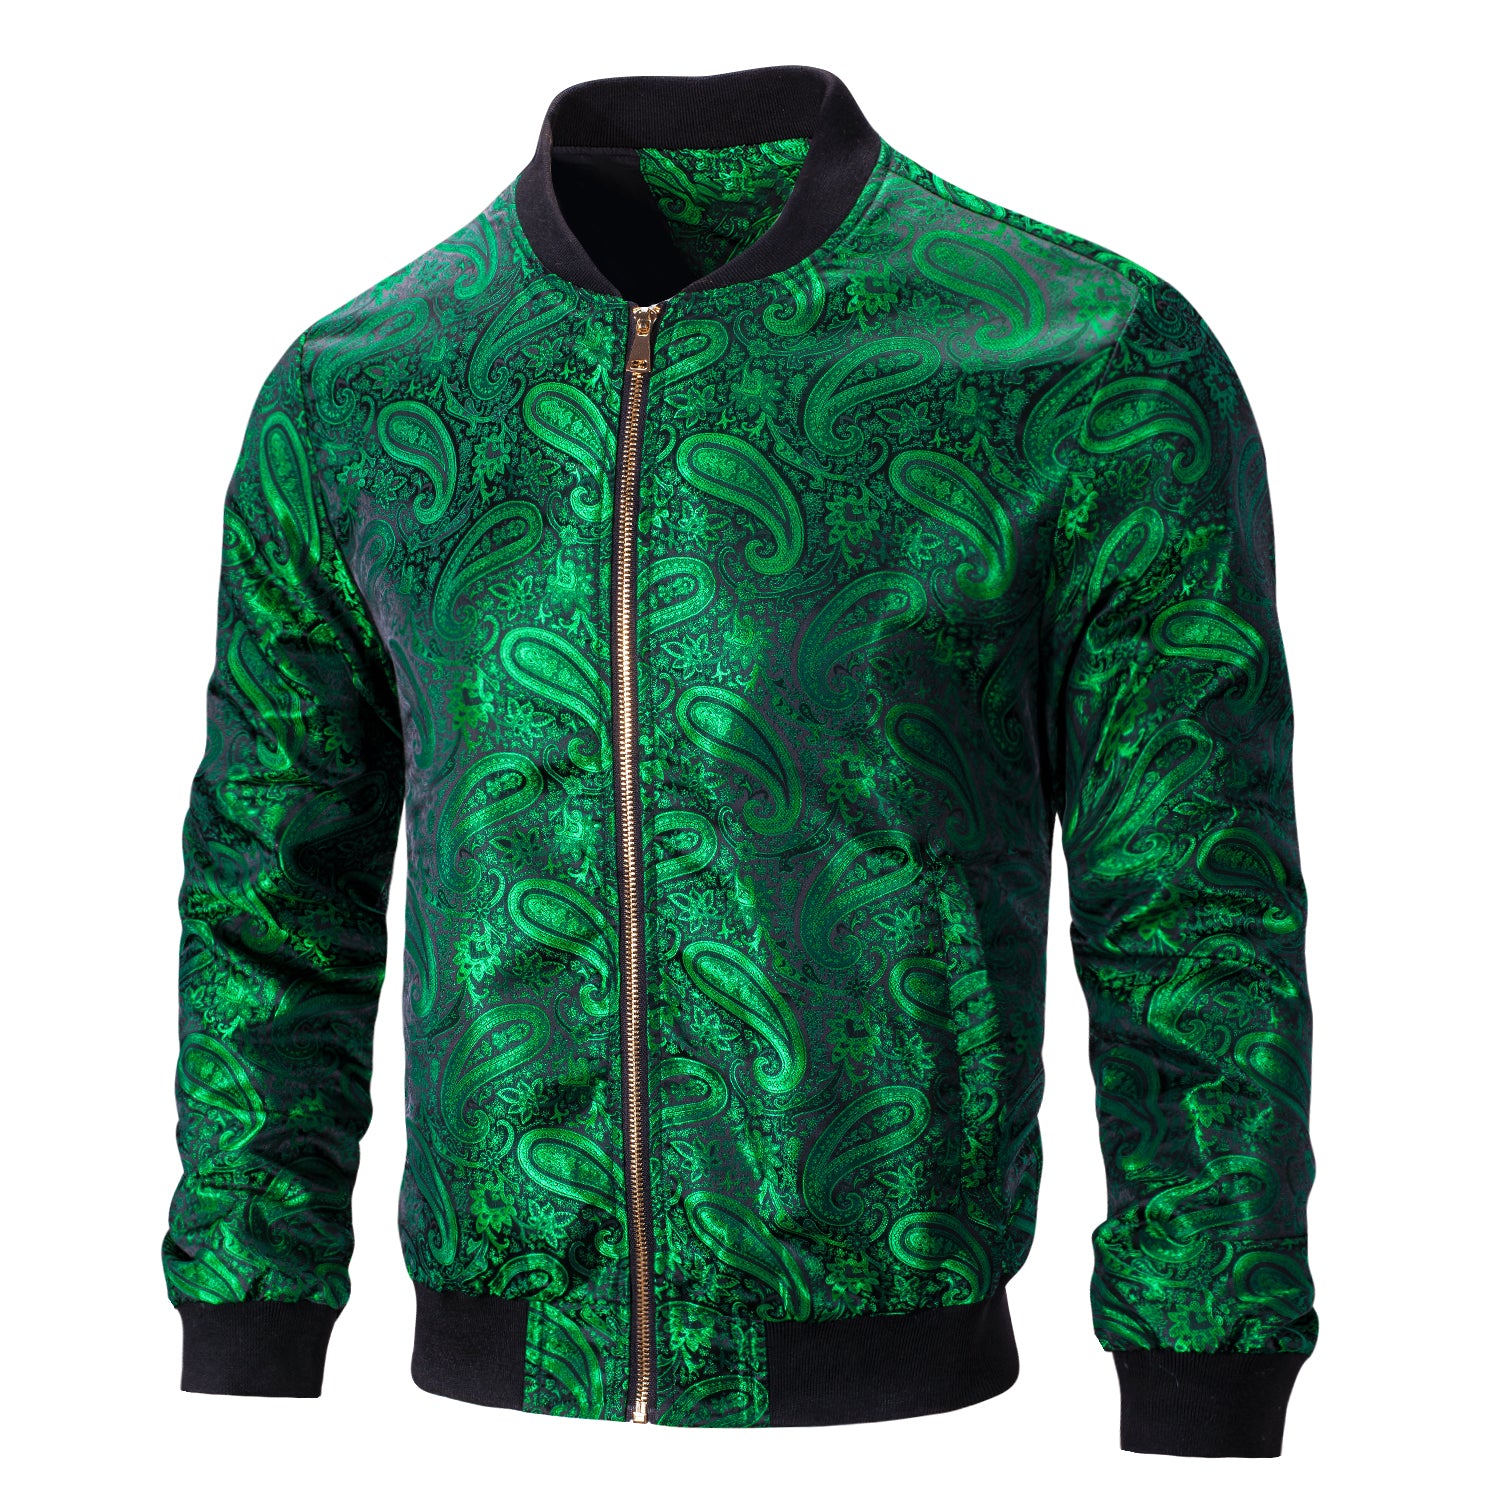 Green Paisley Men's Urban Lightweight Zip Jacket Casual